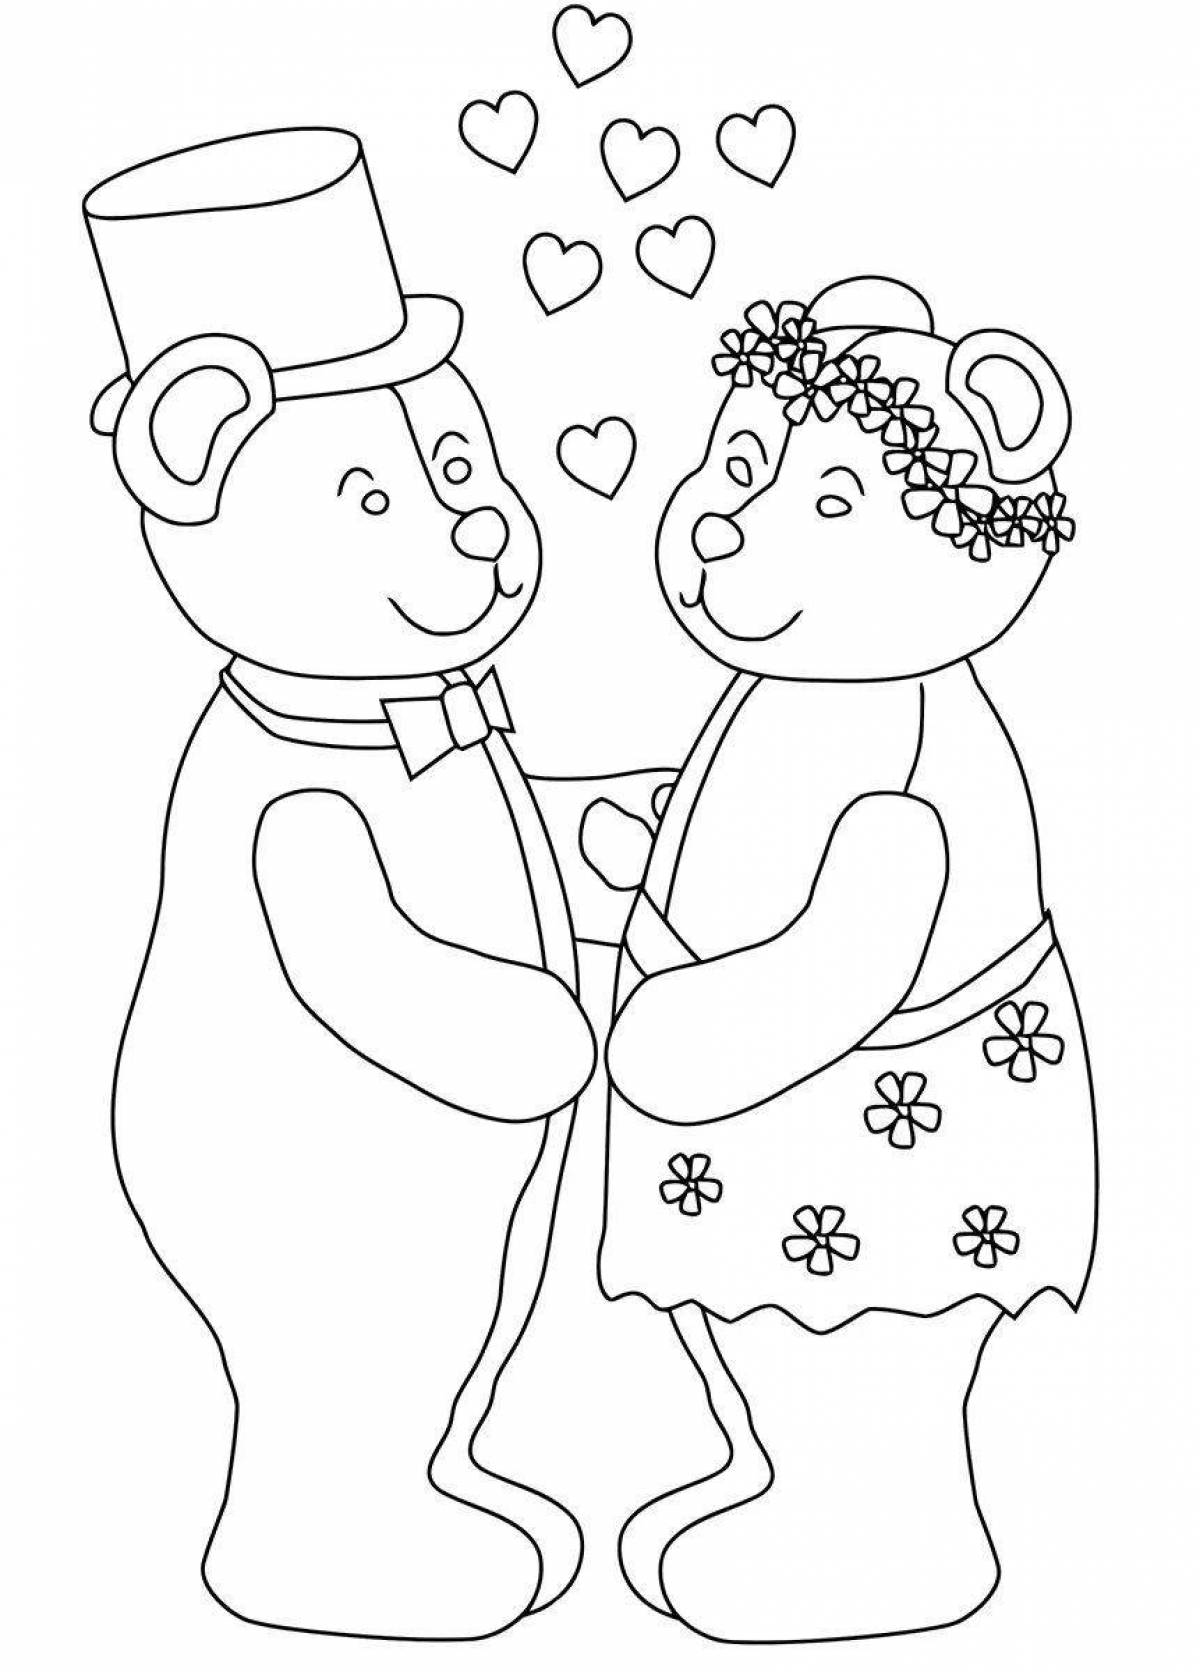 Экзотическая раскраска свадьба для детей